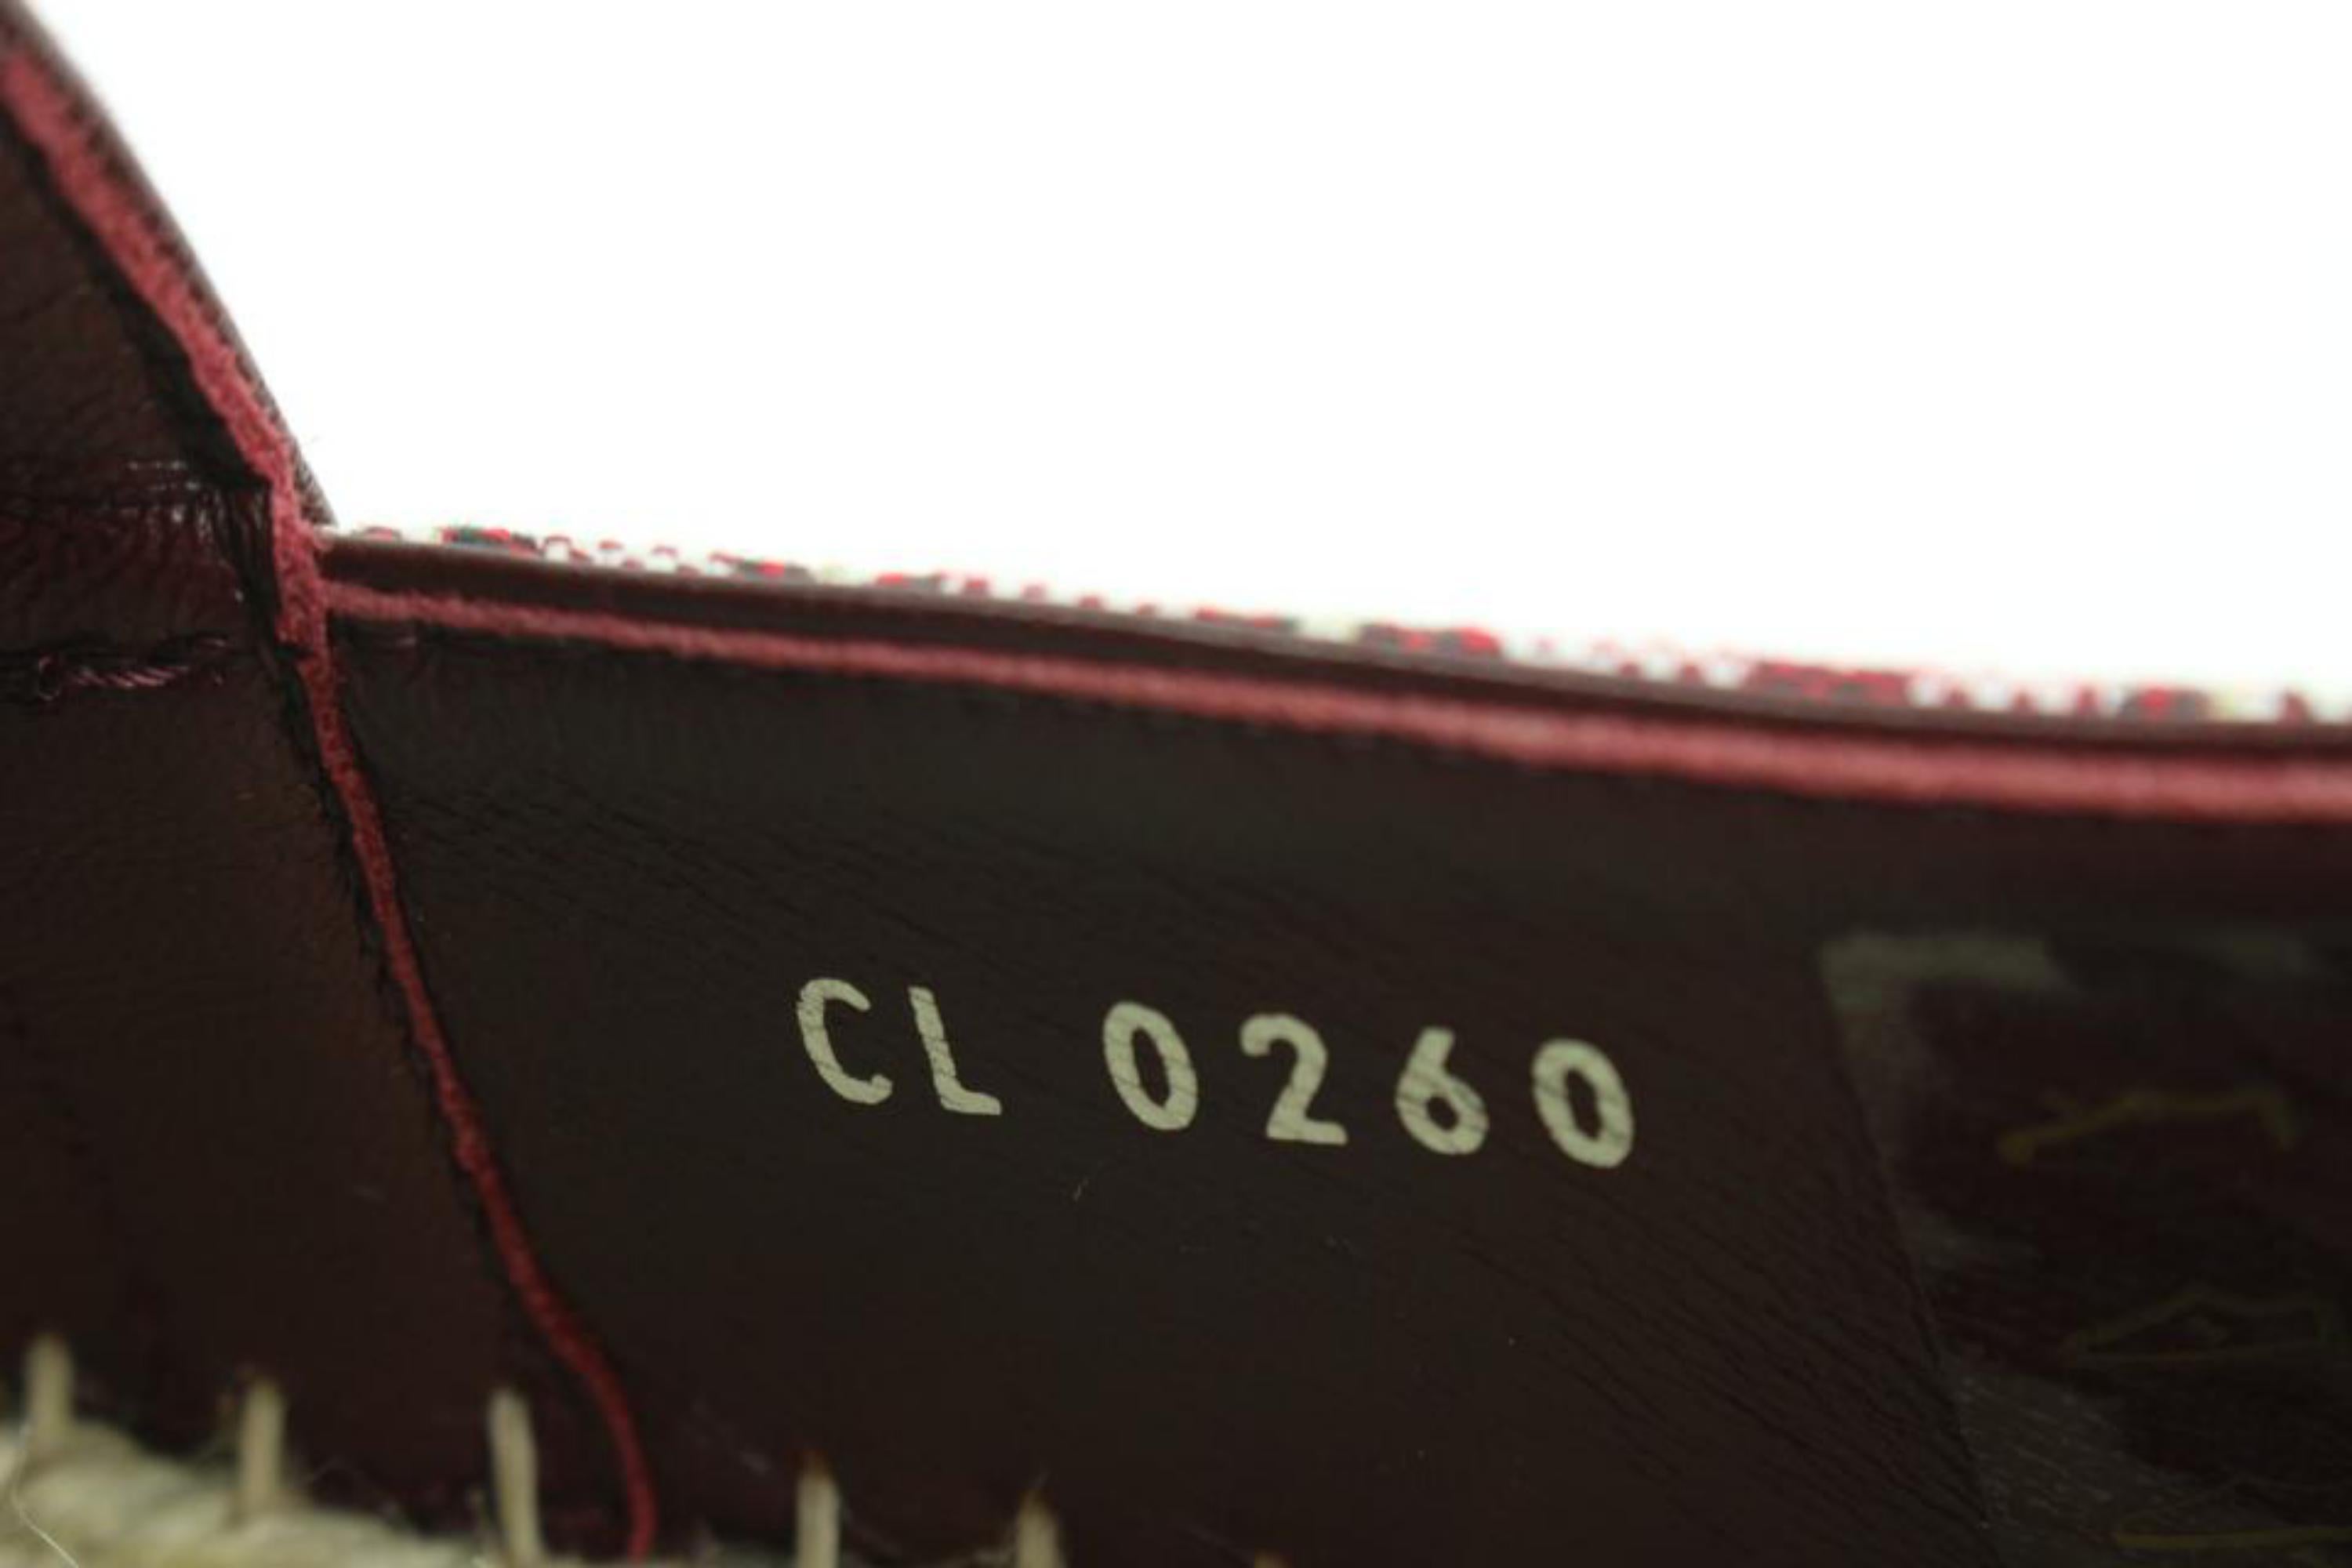 Flache Espadrille aus Starboard von Louis Vuitton in Burgunderrot, Gr 39,5, seit 1854, s27lv99 (Beige) im Angebot